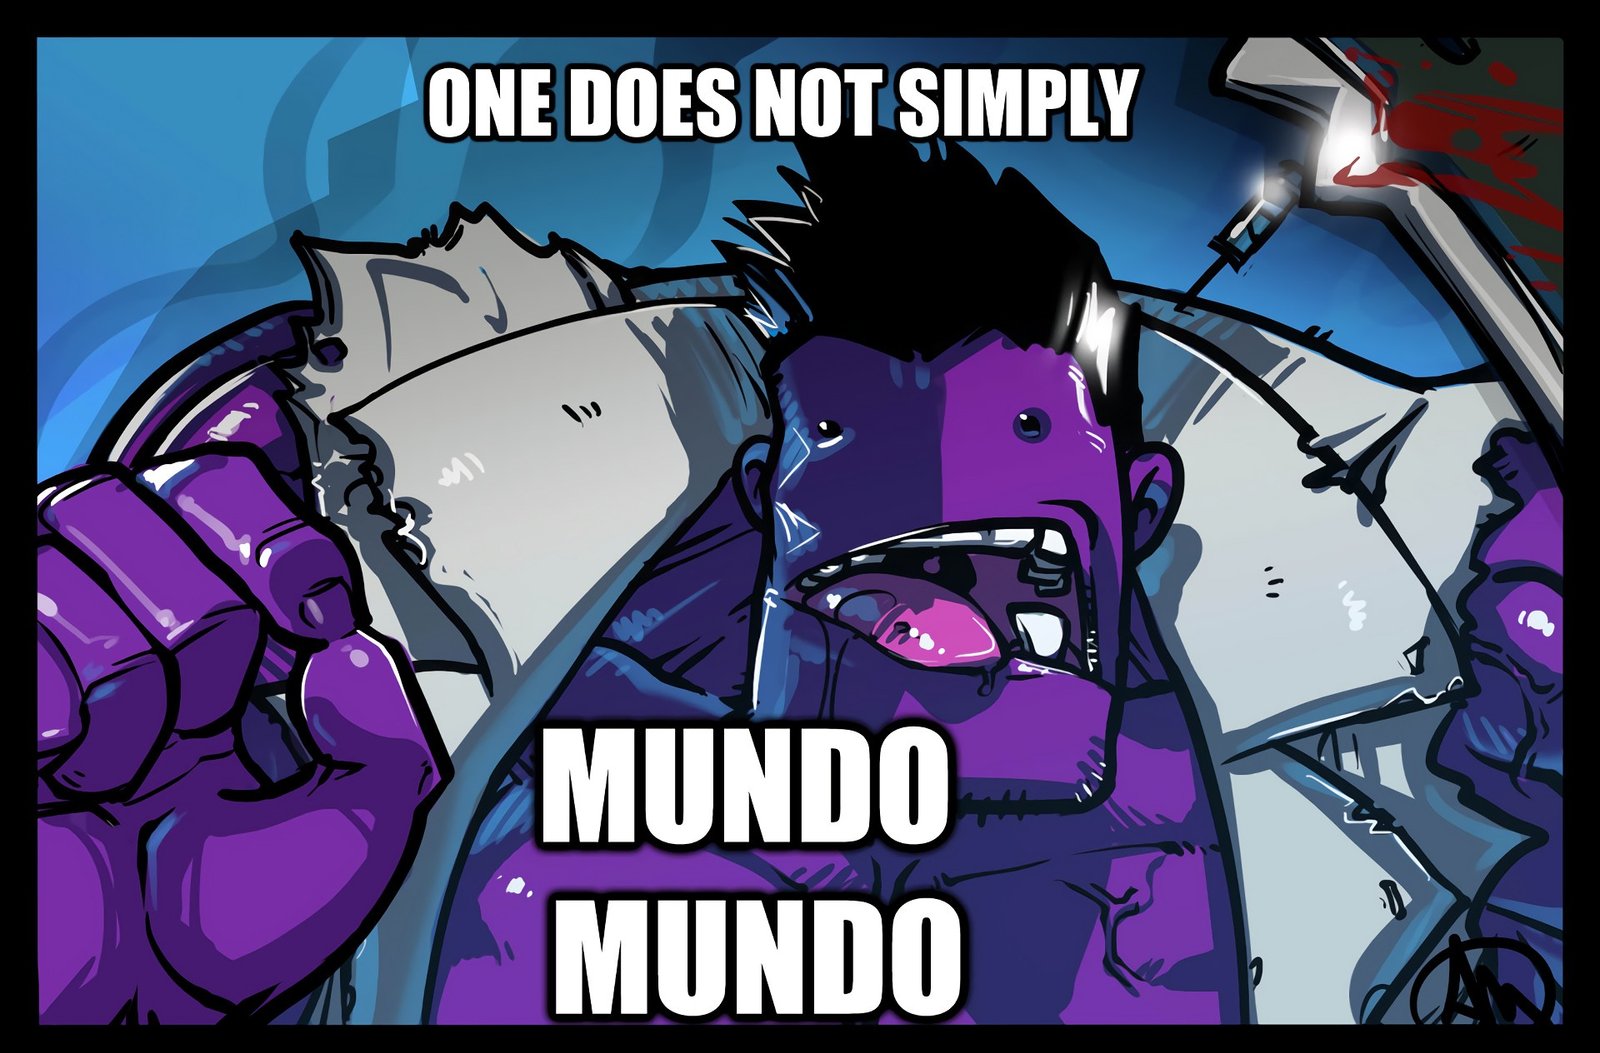 Dr. Mundo Meme by Ganassa HD Wallpaper Fan Art Artwork League of Legends lol